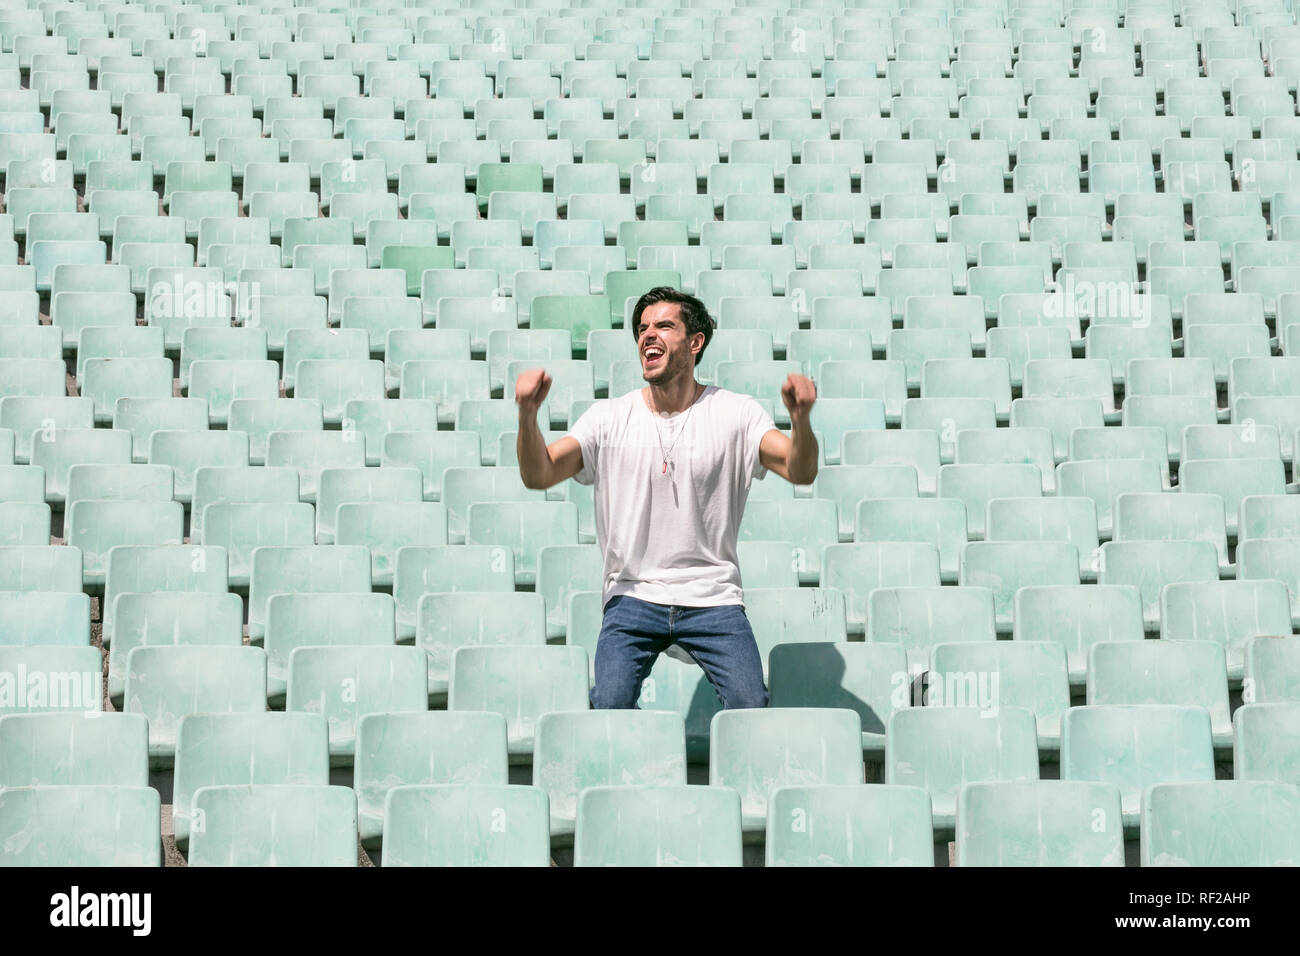 Un joven apuesto hombre permanece en un estadio vacío solos y celebra un triunfo y muestra una sensación de éxito Foto de stock